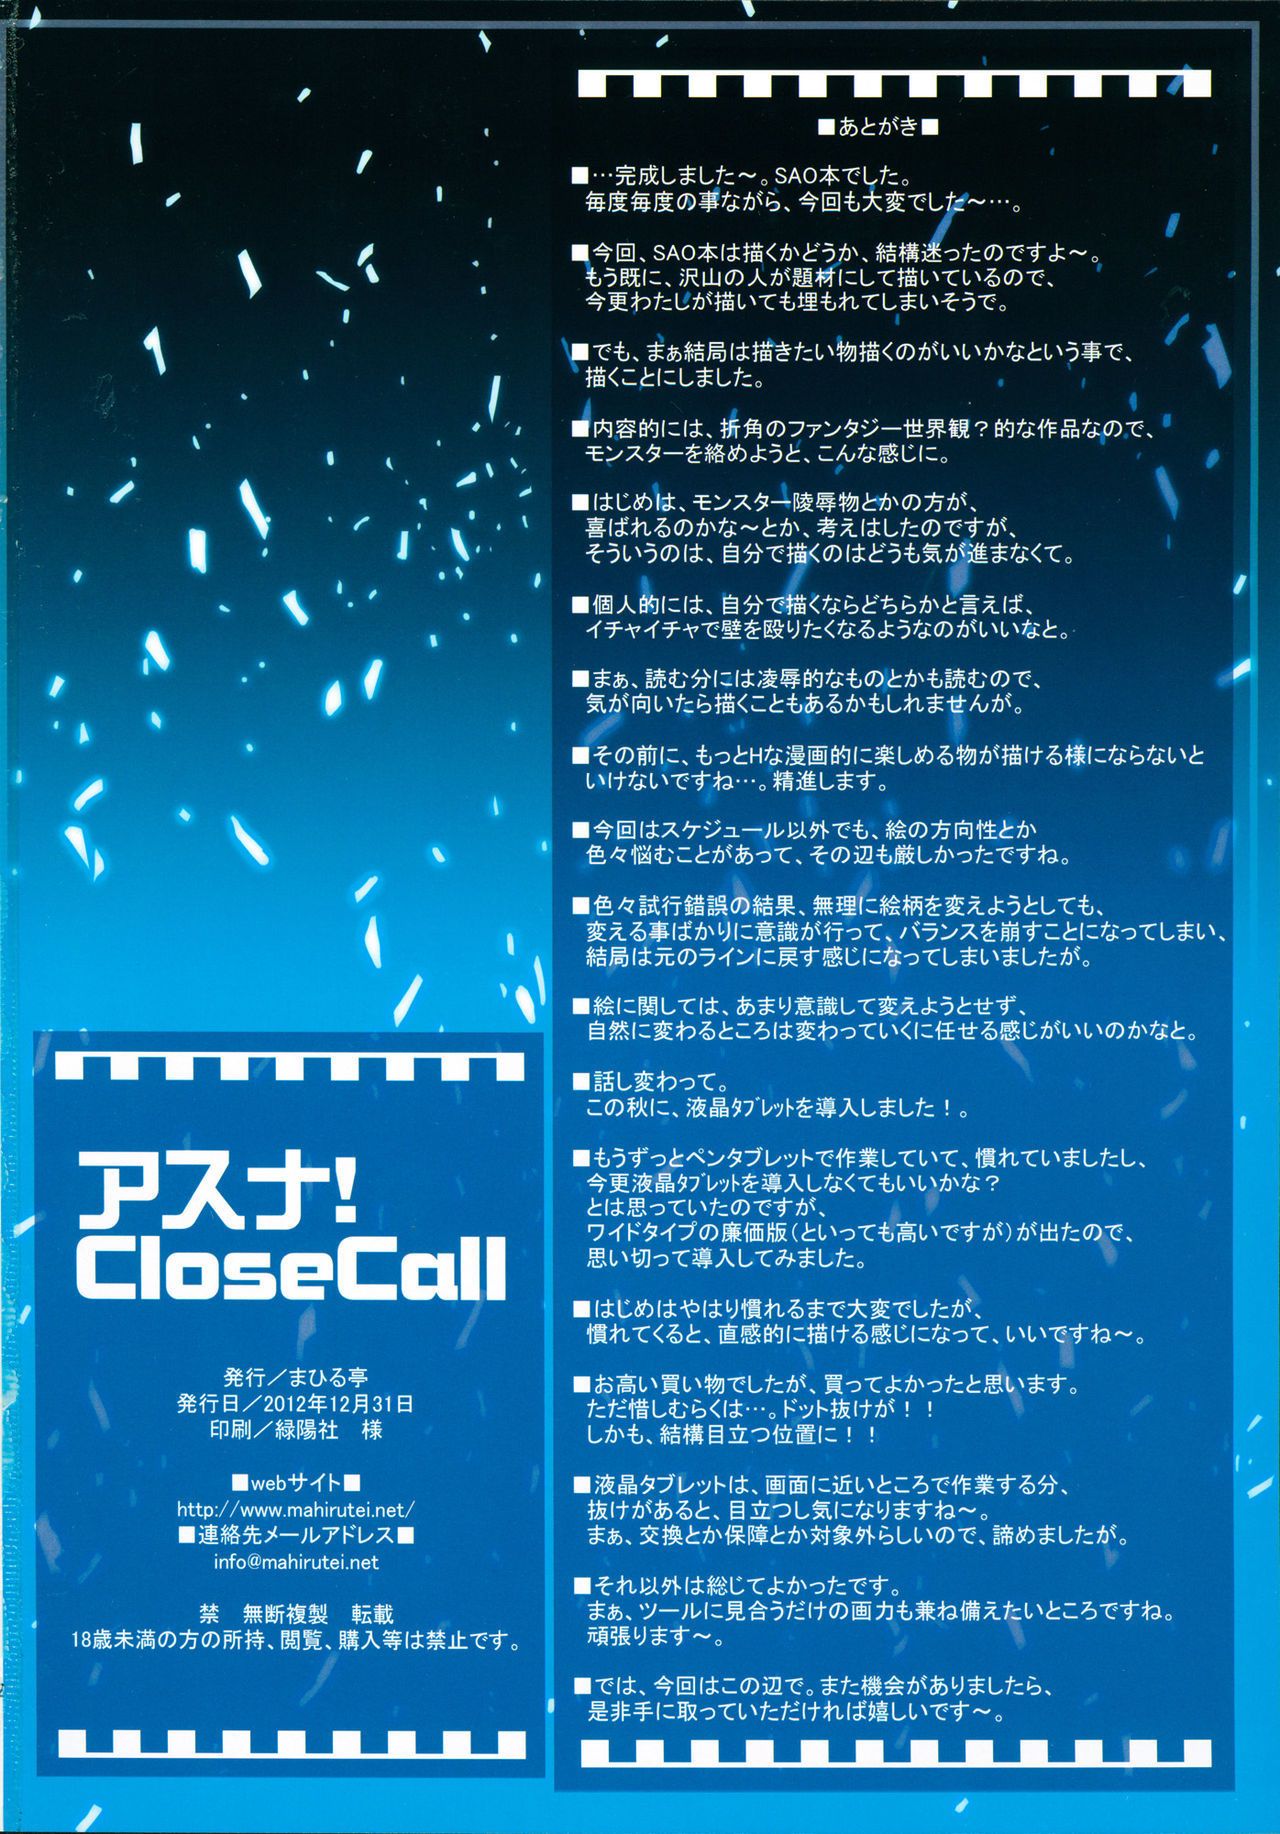 (C83) Mahirutei (Izumi Mahiru) Asuna! Close Call (Sword Art Online) {}